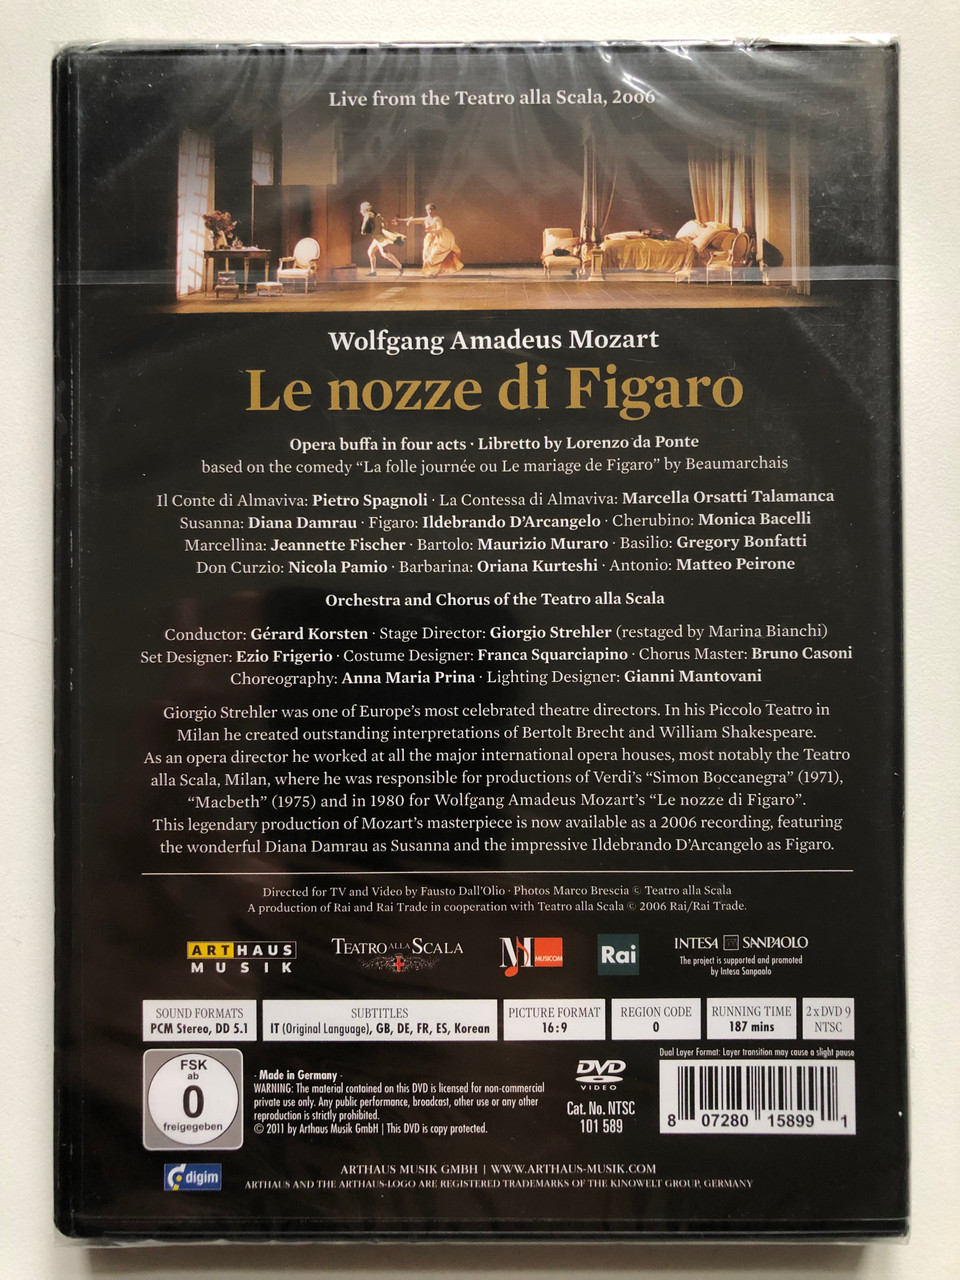 1Le_nozze_di_Figaro_at_Teatro_alla_Scala_2006_-173692655__80409.1711284696.1280.1280.JPG (960×1280)